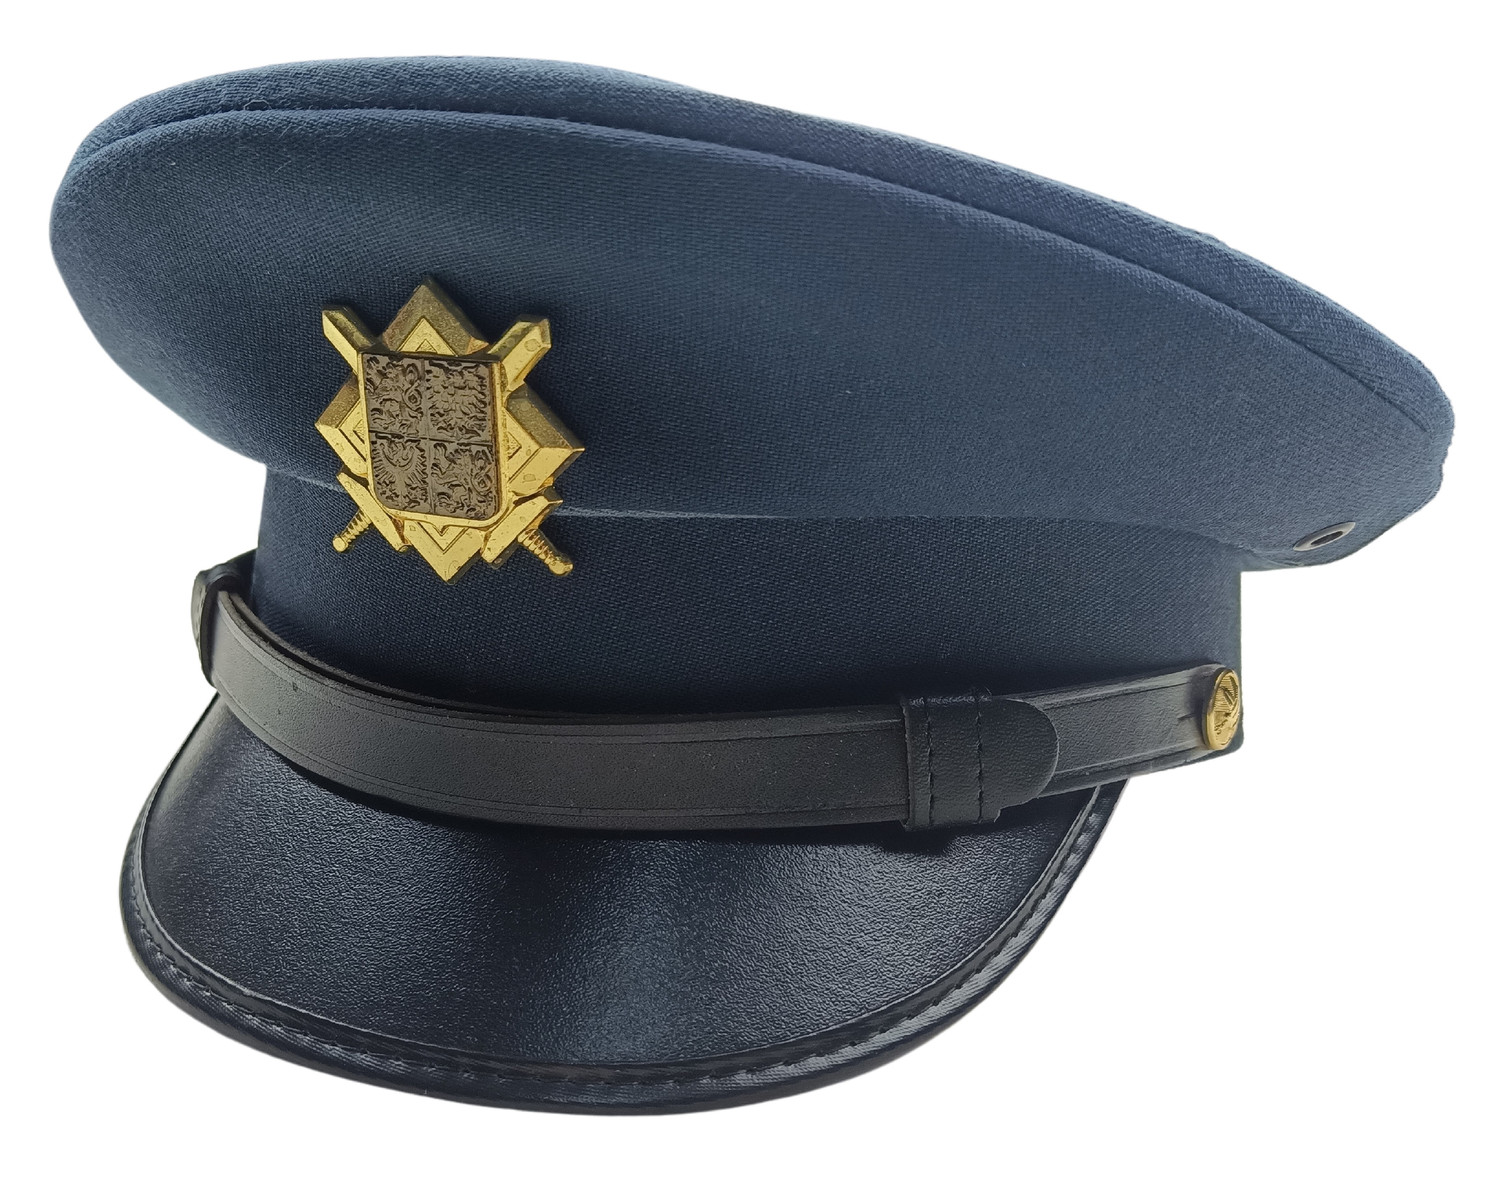 Brigadýrka služební s odznakem AČR modrá vz.97 vzdušné síly originál Velikost: 59